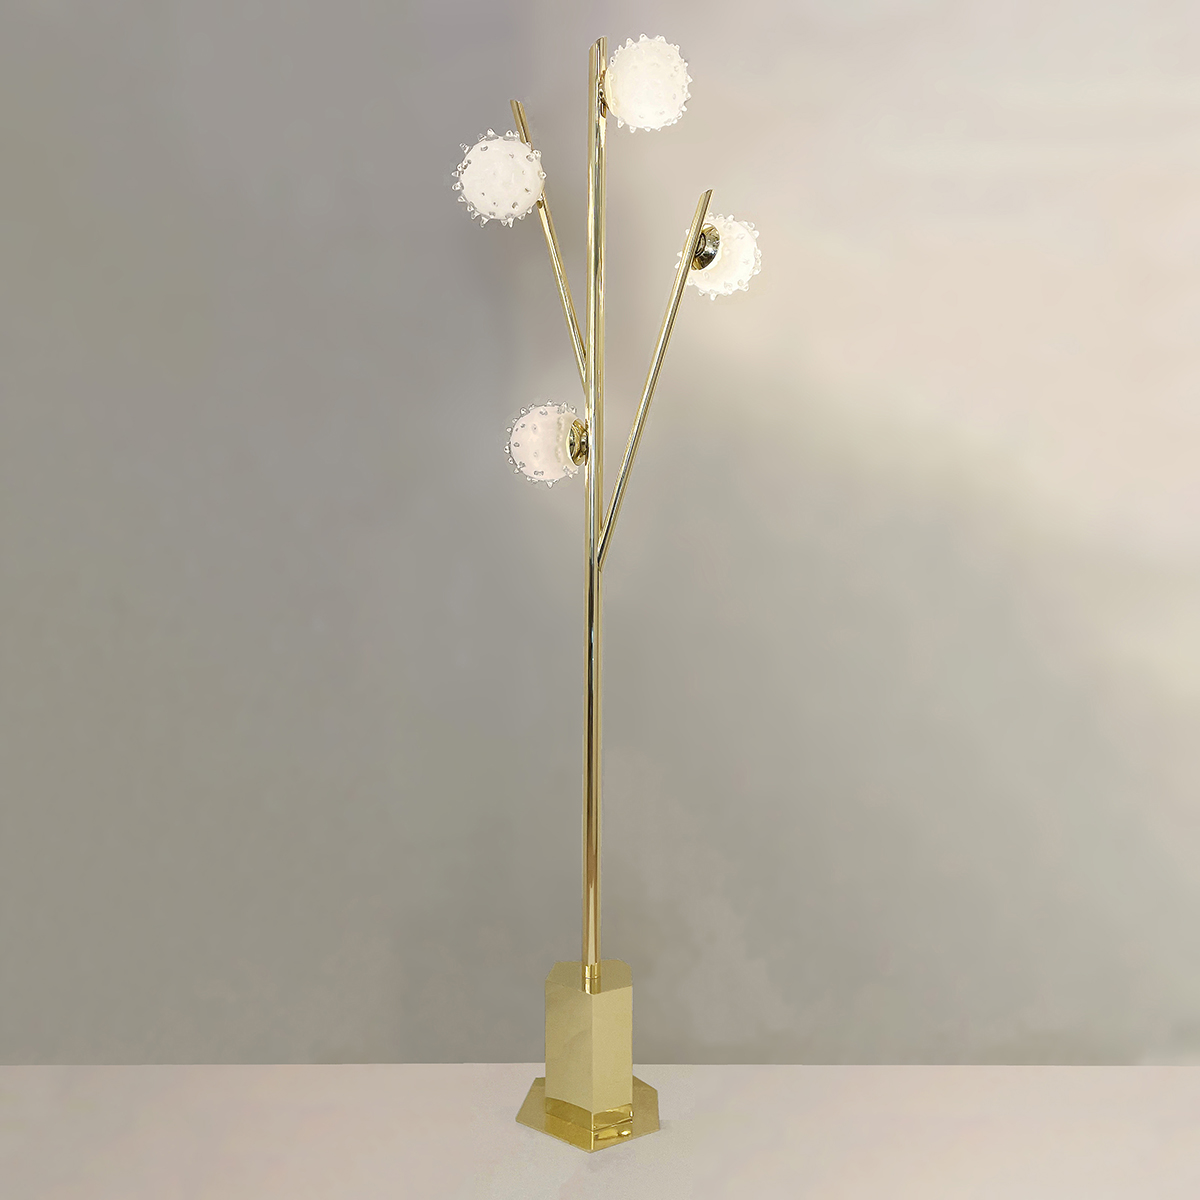 Riccio Floor Lamp by form A